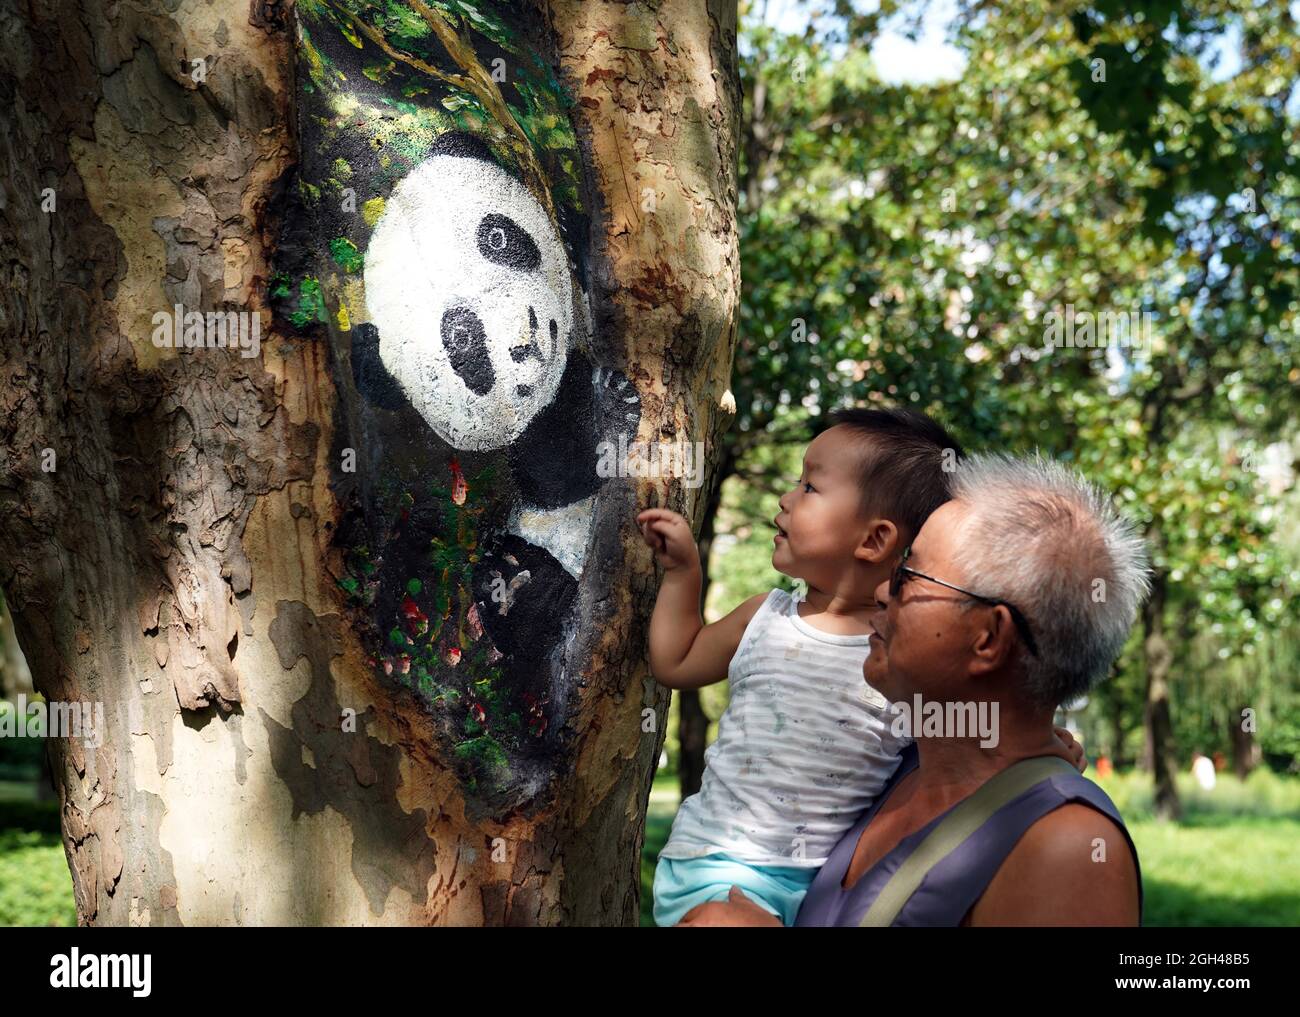 Shanghai, Cina. 31 ago 2021. La gente guarda un buco di alberi dipinti al Parco Zhabei a Shanghai, Cina orientale, 31 agosto 2021. Il Parco Zhabei ha recentemente fatto uno sforzo per migliorarne l'aspetto pulendo e abbellendo i fori degli alberi nel parco con motivi creativi. Credit: Liu Ying/Xinhua/Alamy Live News Foto Stock